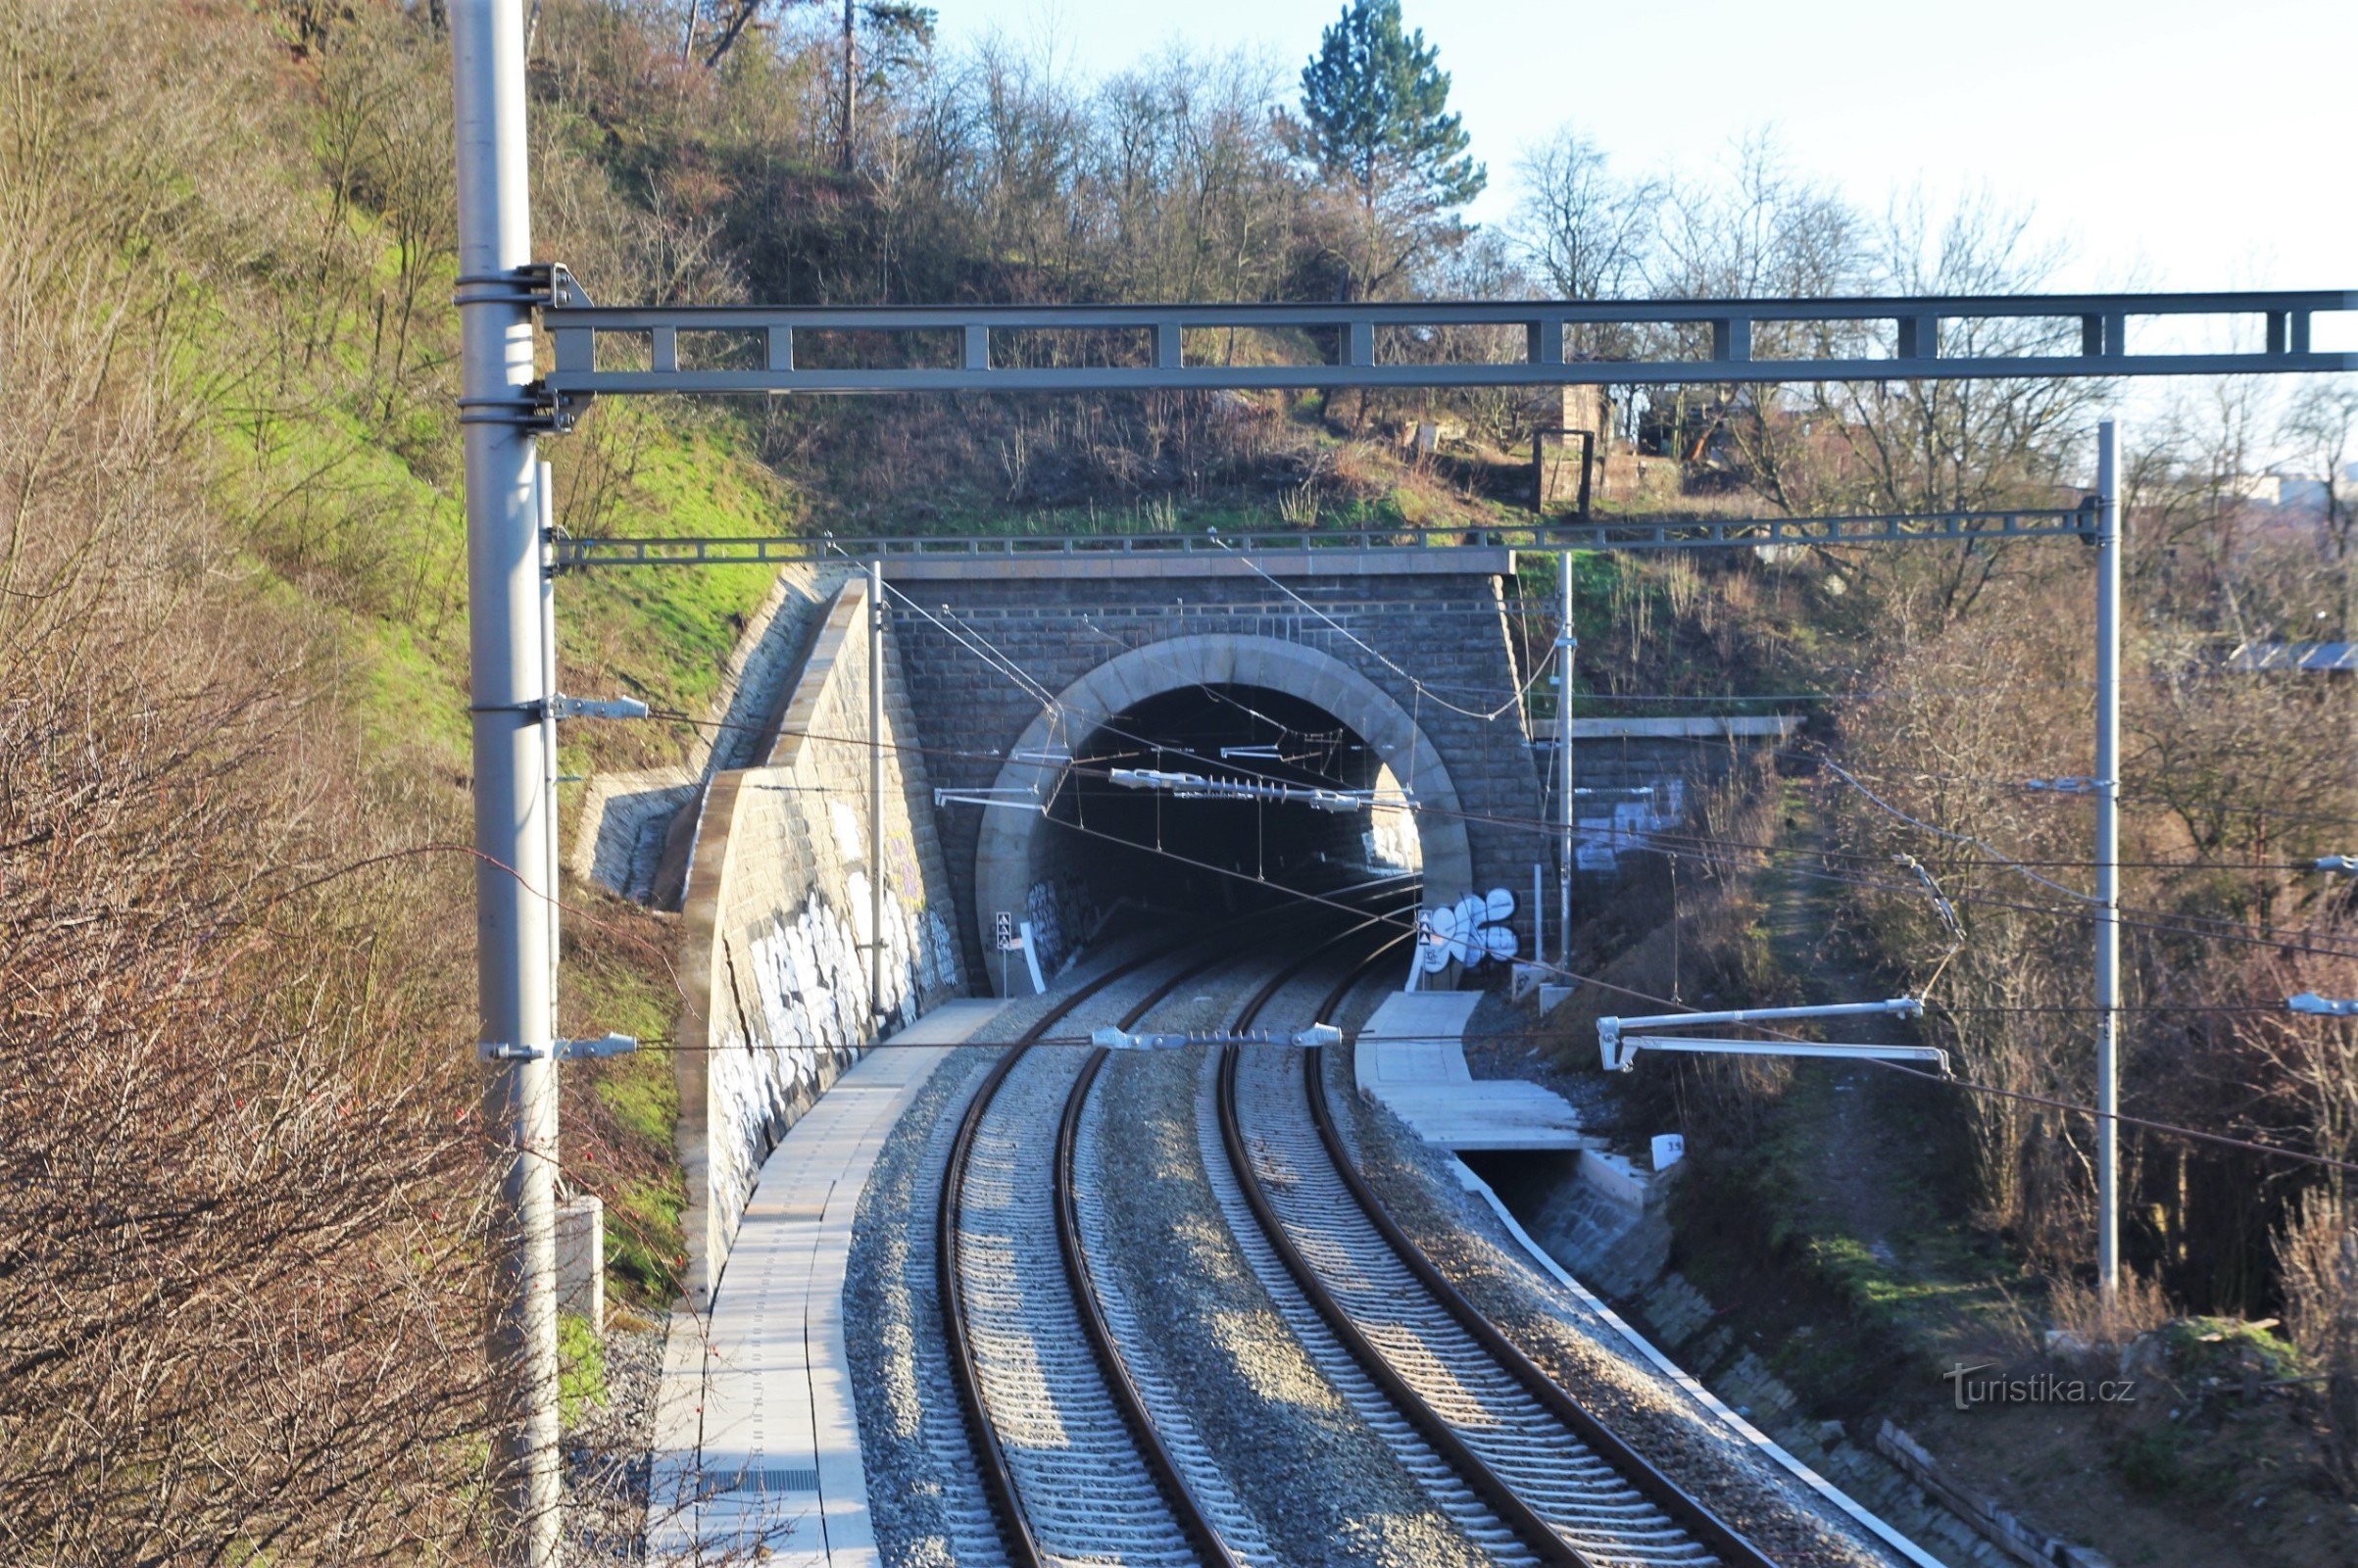 Obránsky double-track tunnel